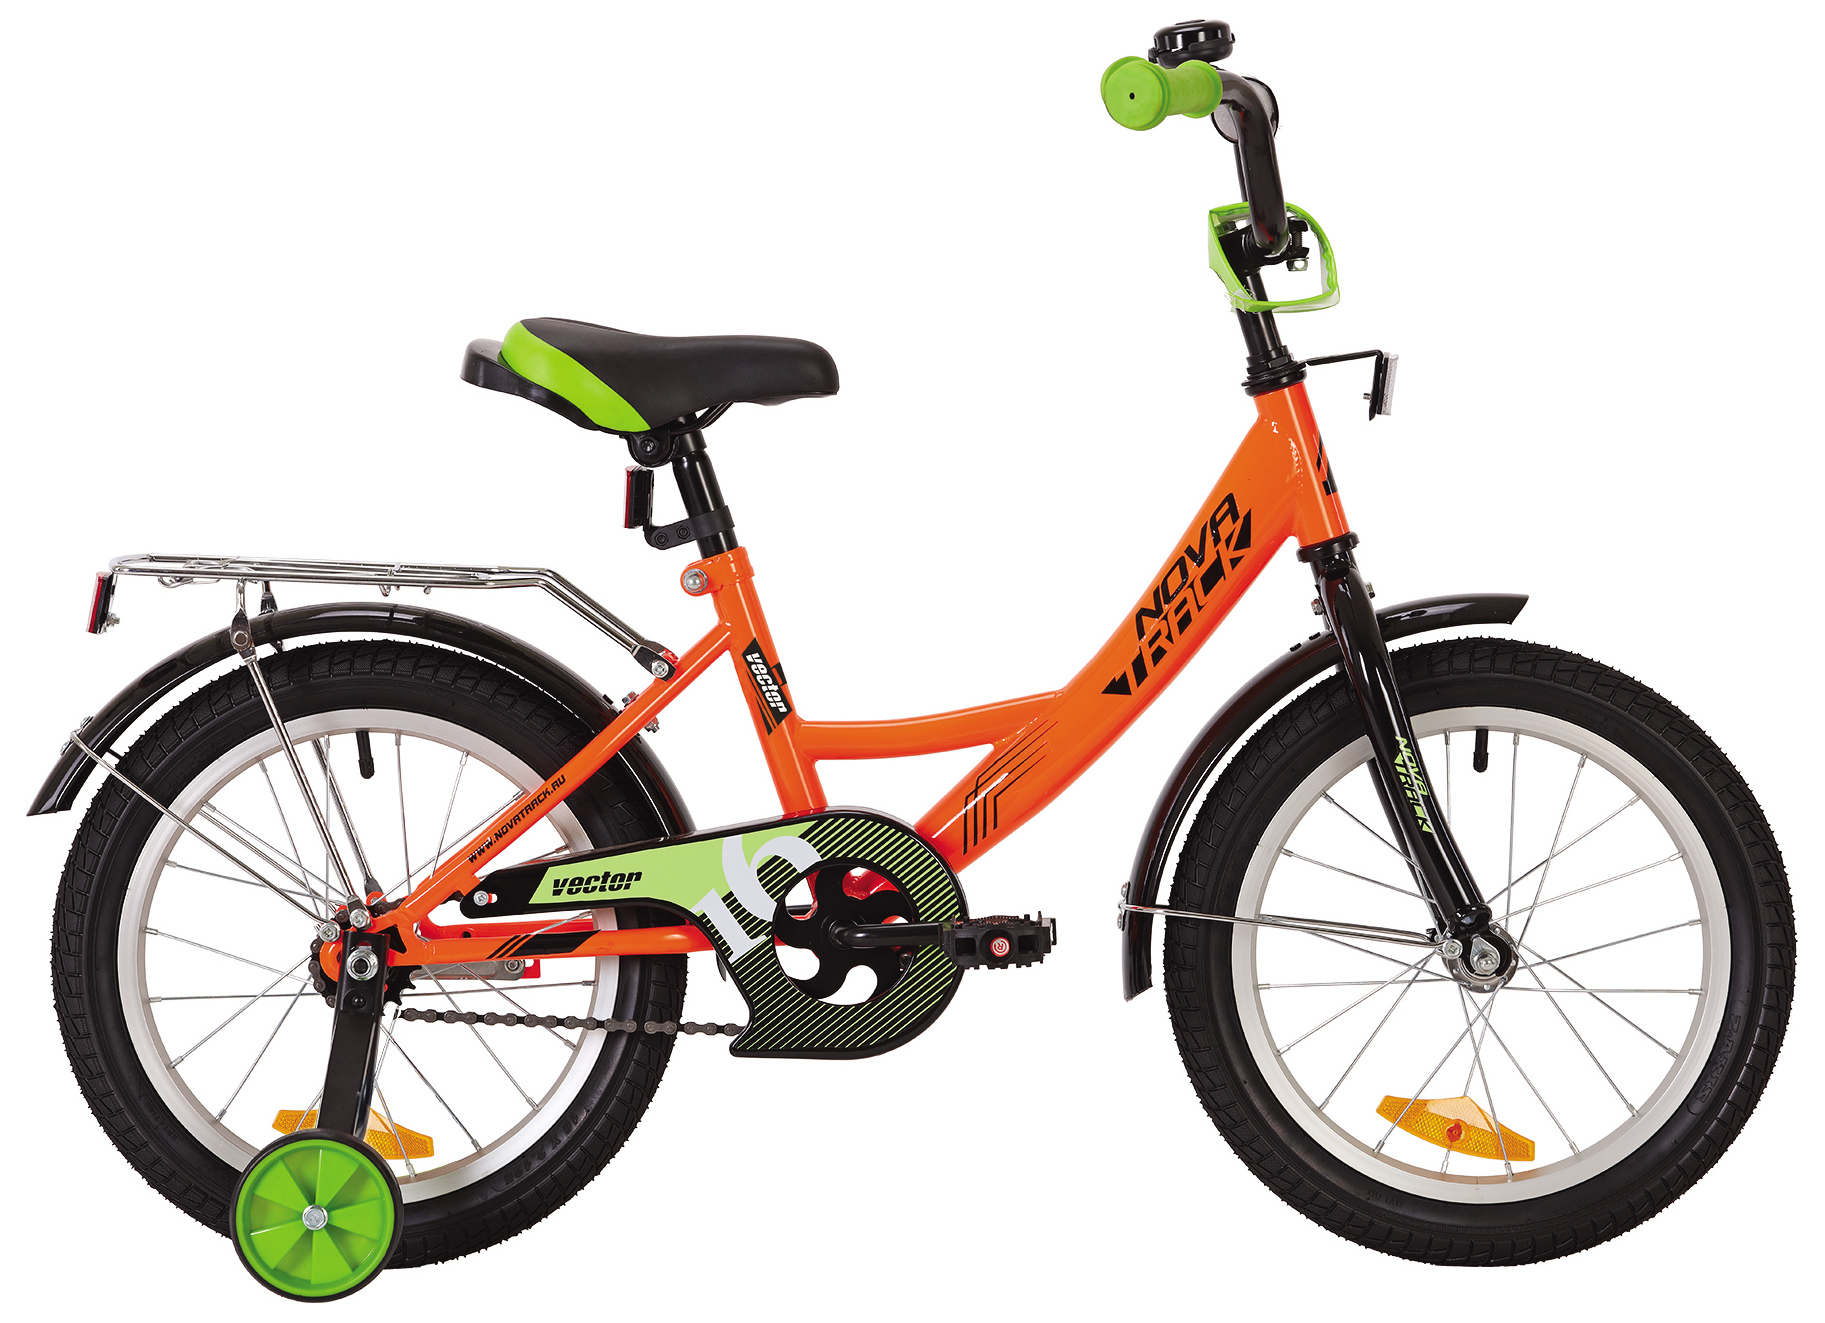  Отзывы о Детском велосипеде Novatrack Vector 16 2019